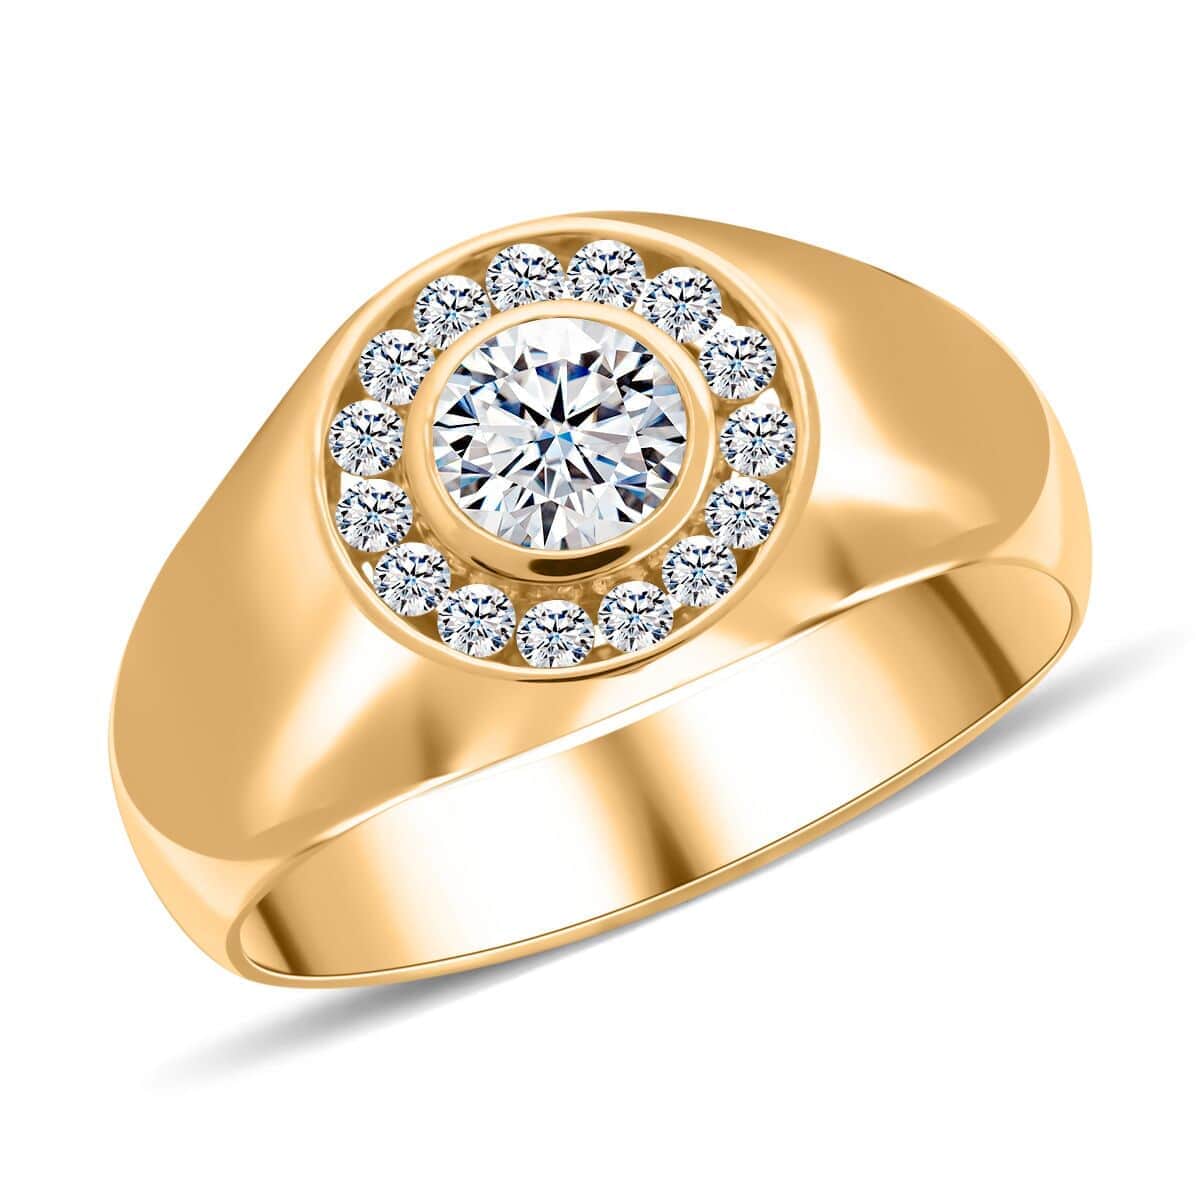 Modani 14K Yellow Gold Diamond Men's Ring (Size 10.0) 6.70 Grams 1.10 ctw image number 0